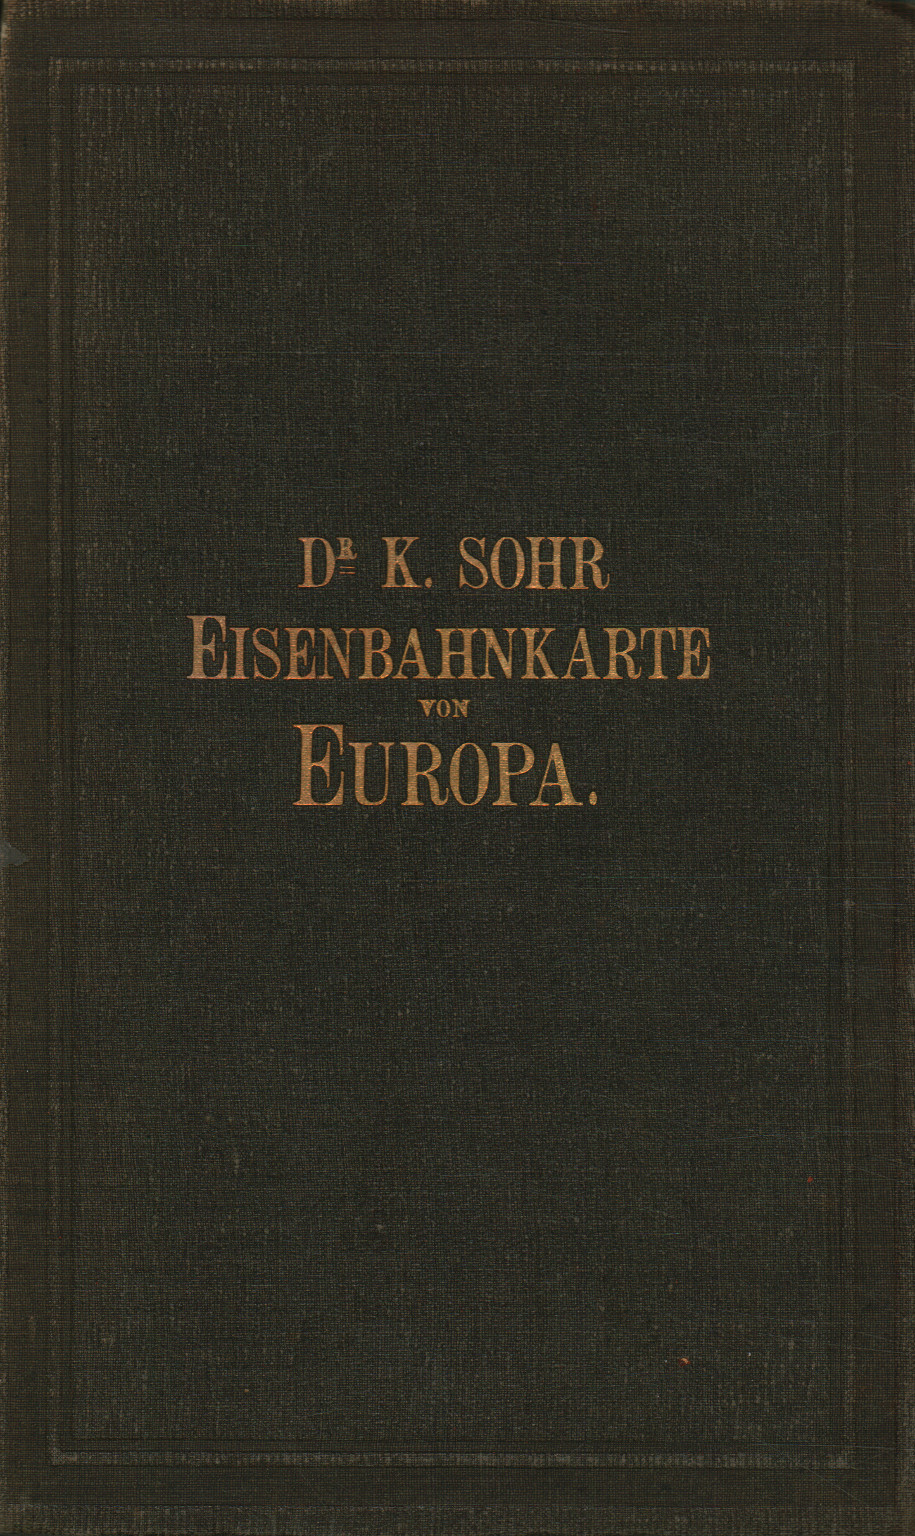 Einsenbahn- und Dampfchiffrouten-Karte von Europa, K. Sohr